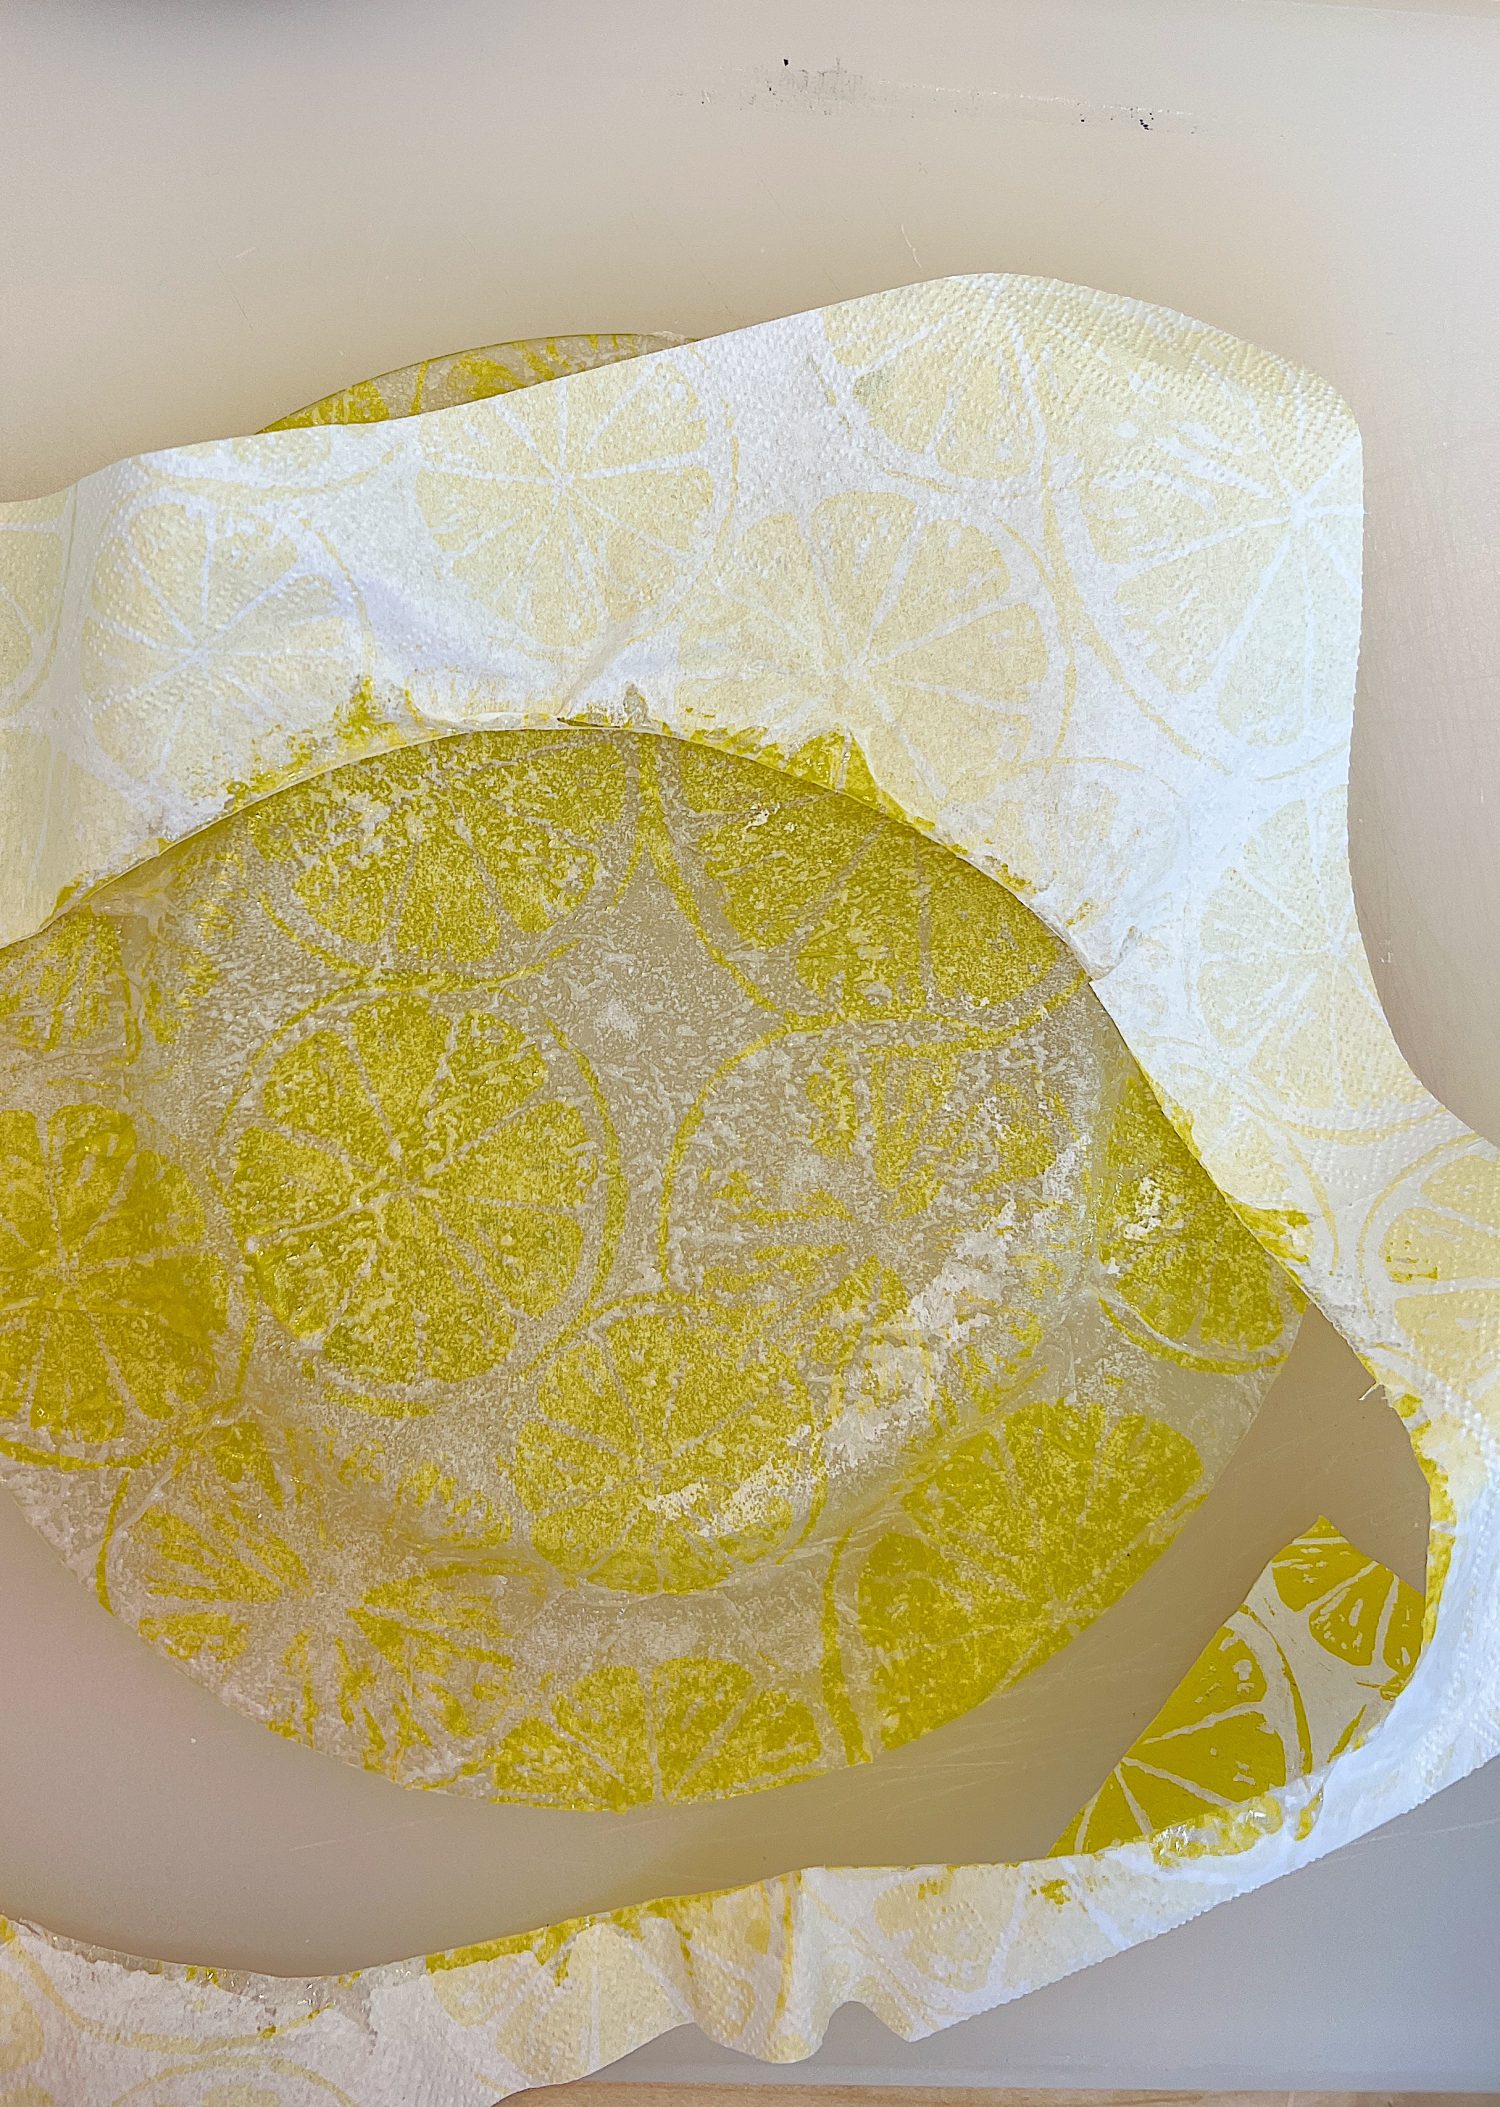 How to Make Lemon Plates with a Lemon Slice Napkin